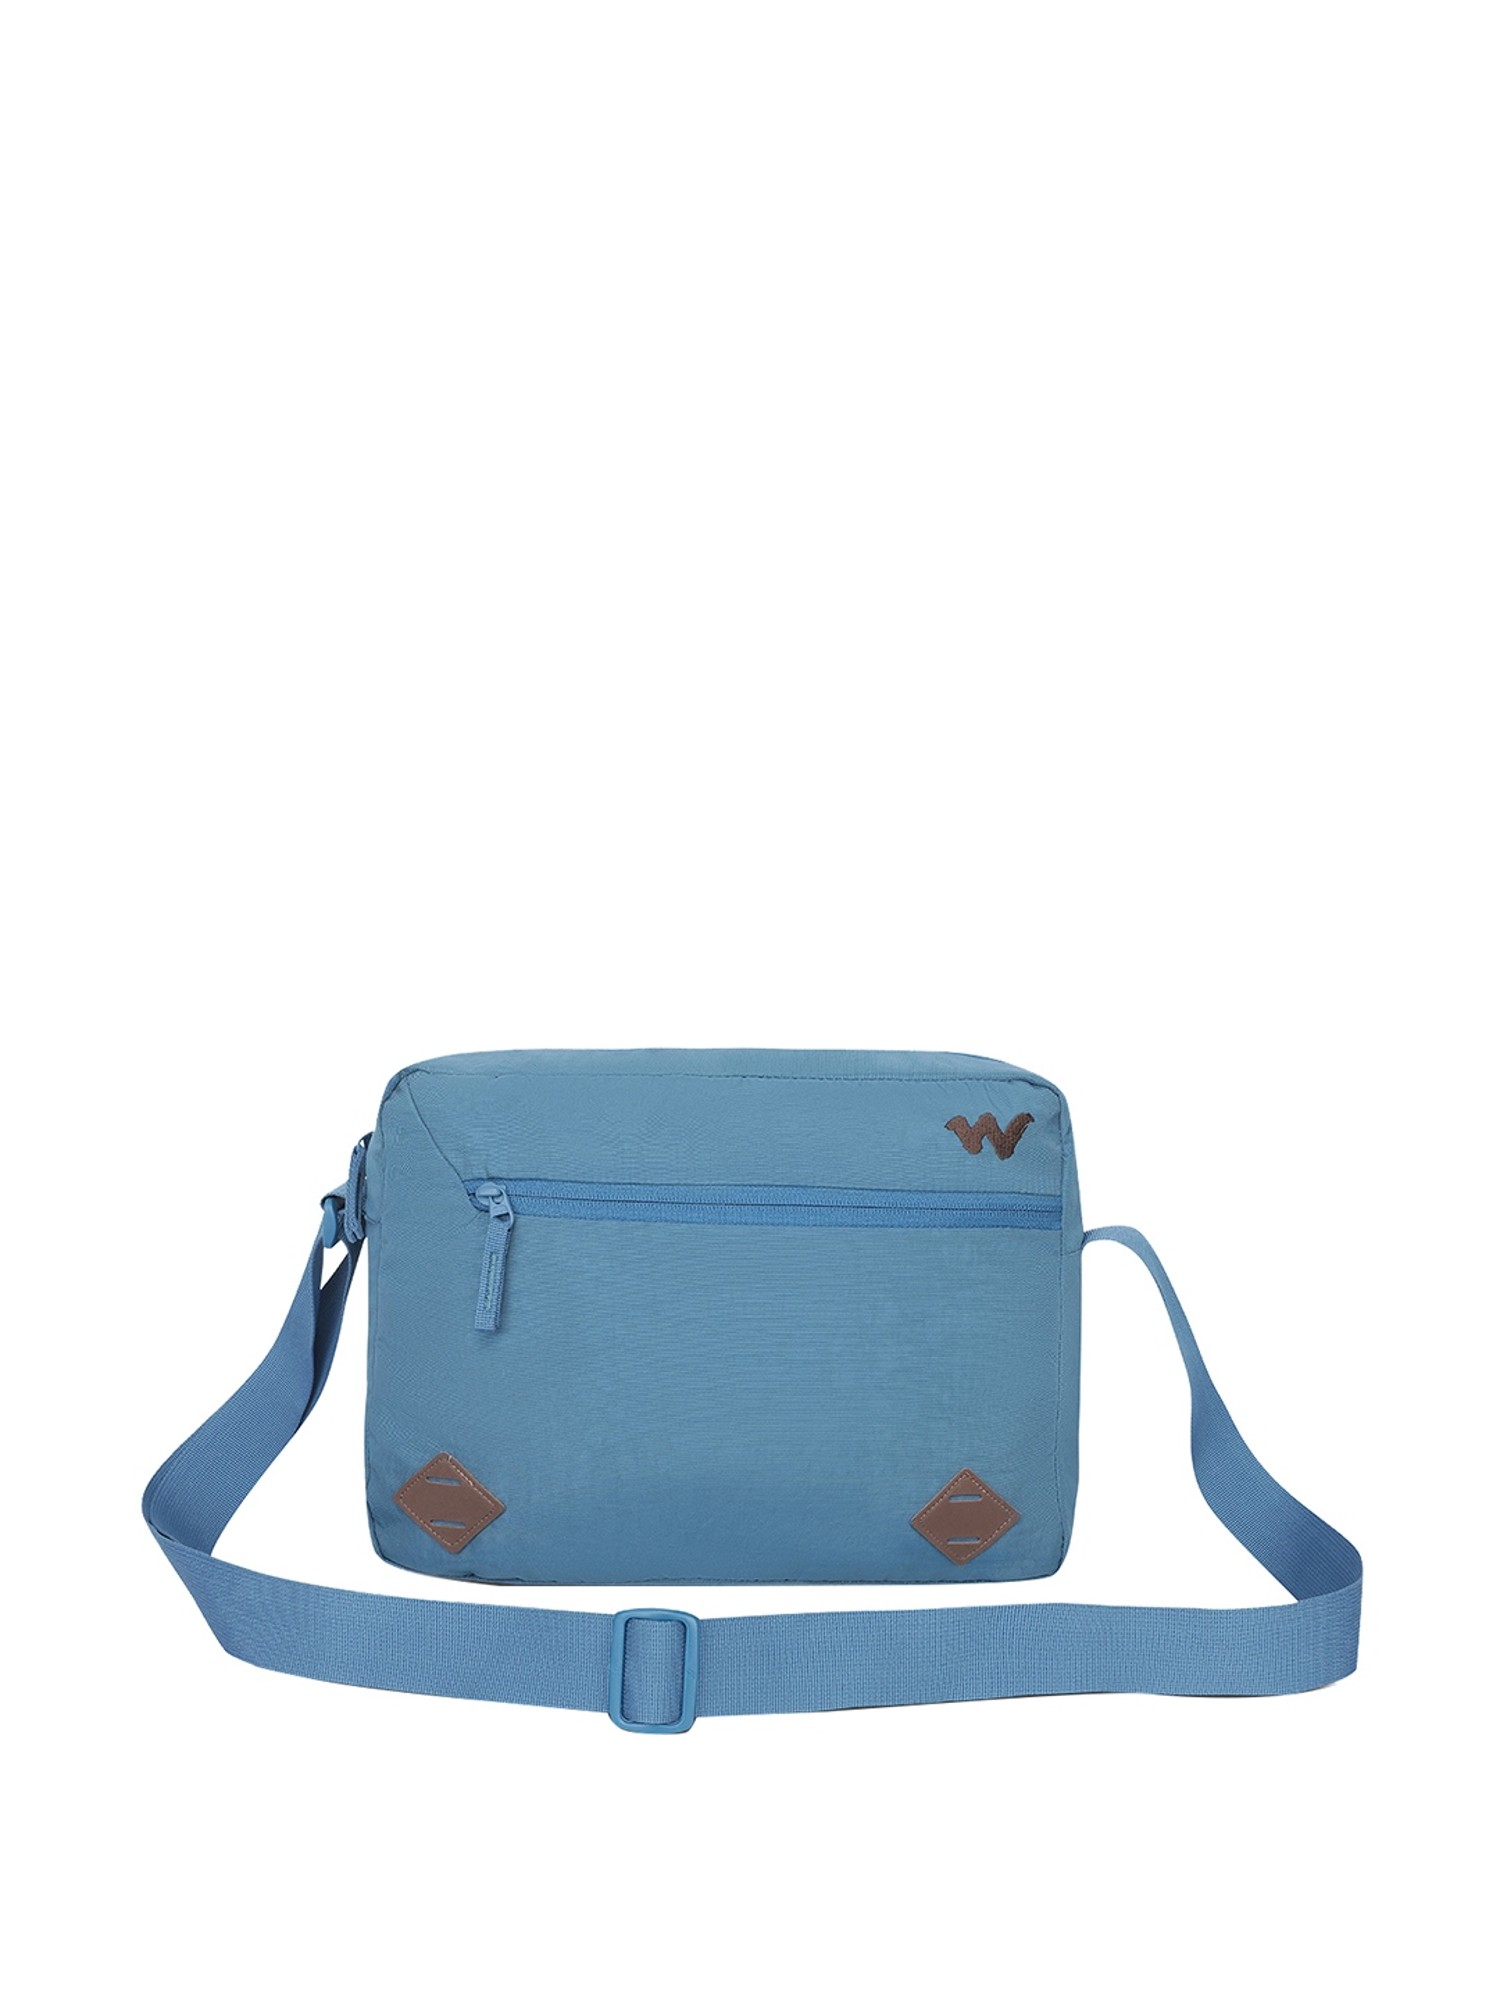 Wildcraft Bag Sling Bags - Buy Wildcraft Bag Sling Bags online in India